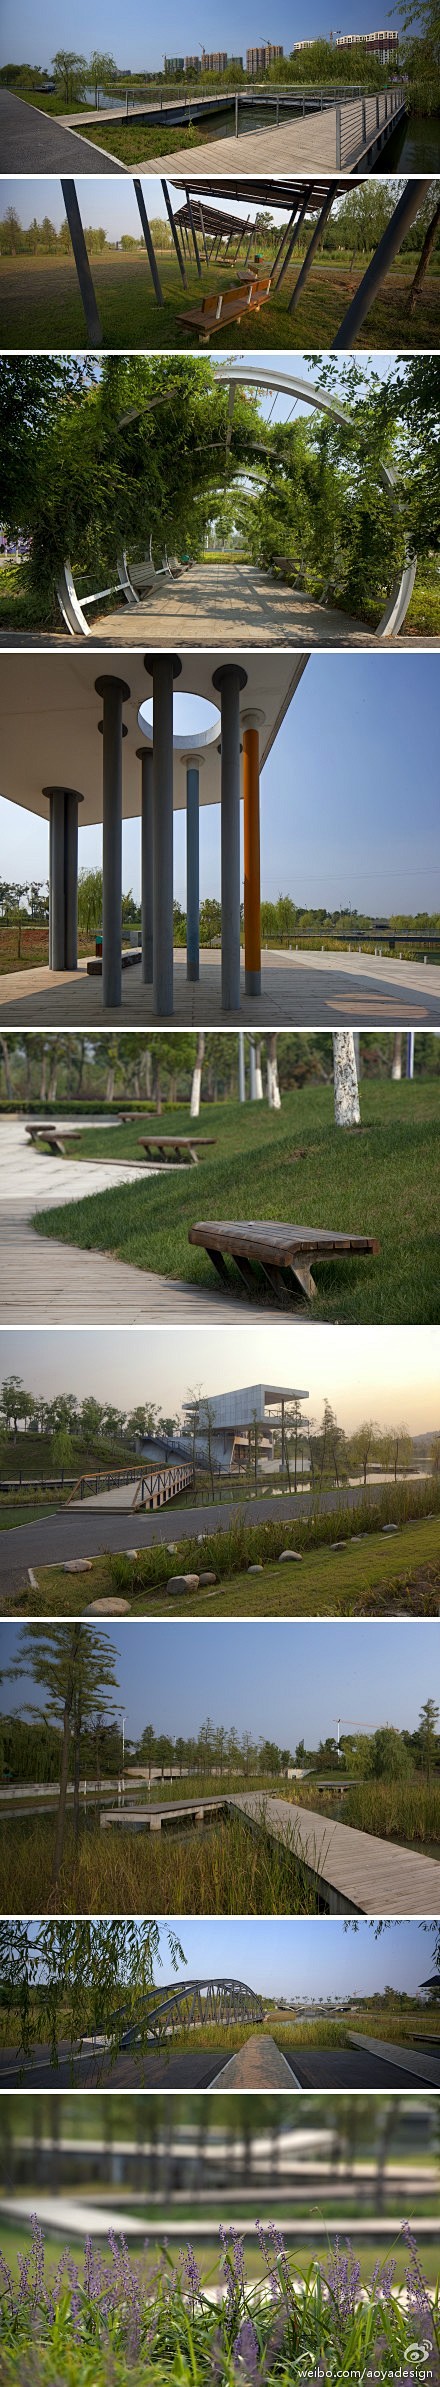 芜湖中央文化公园—占地48公顷的带状城市...